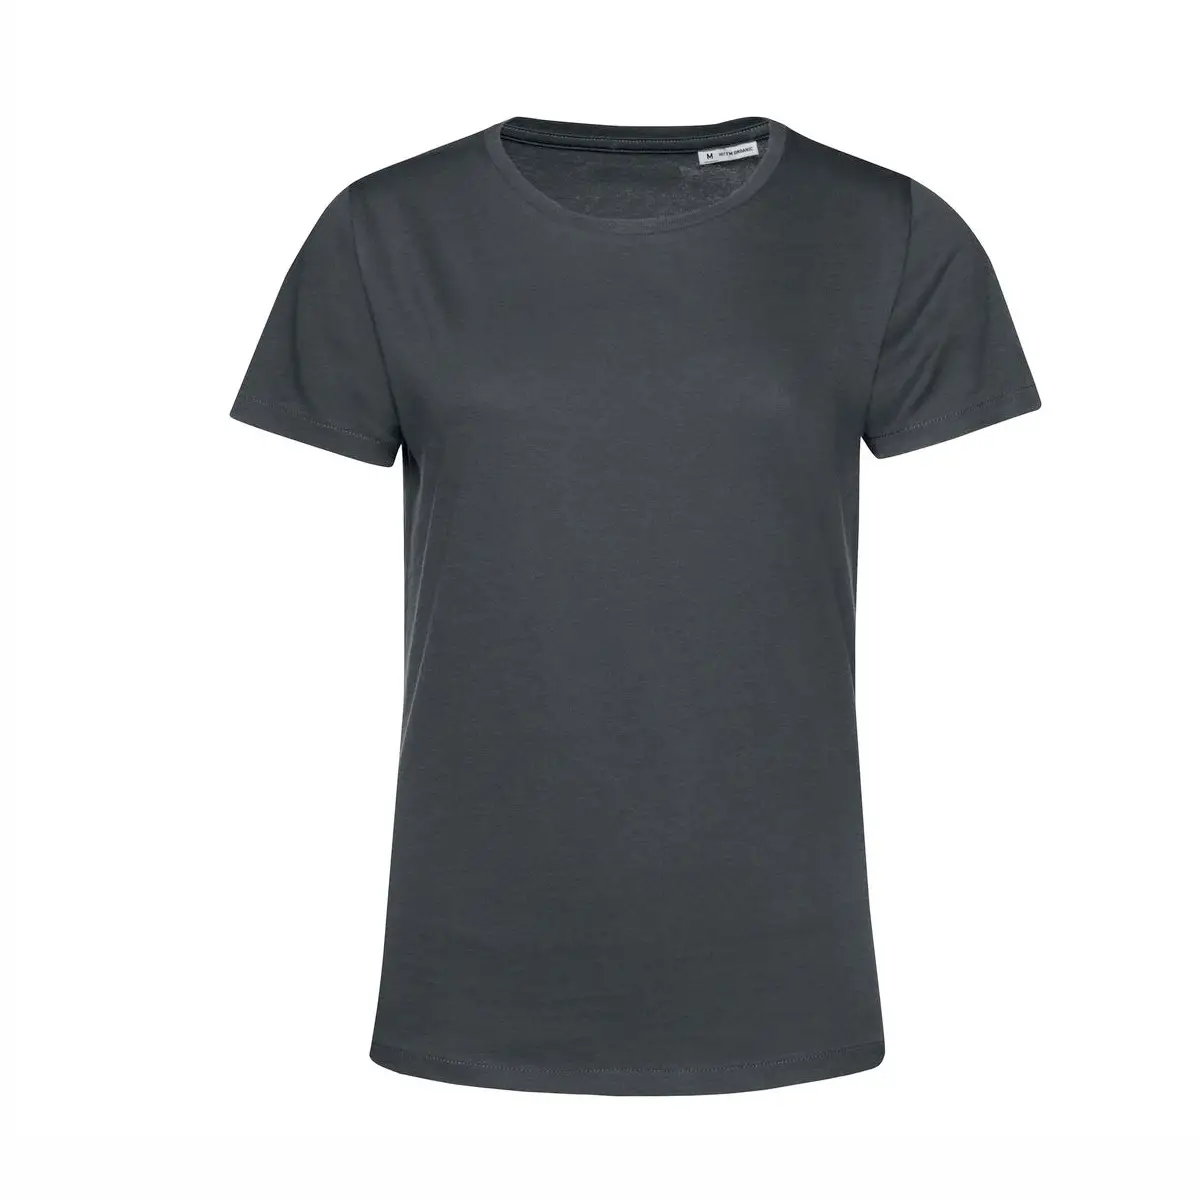 T-Shirt Manica Corta Donna Cotone Personalizzata - B&C Collection